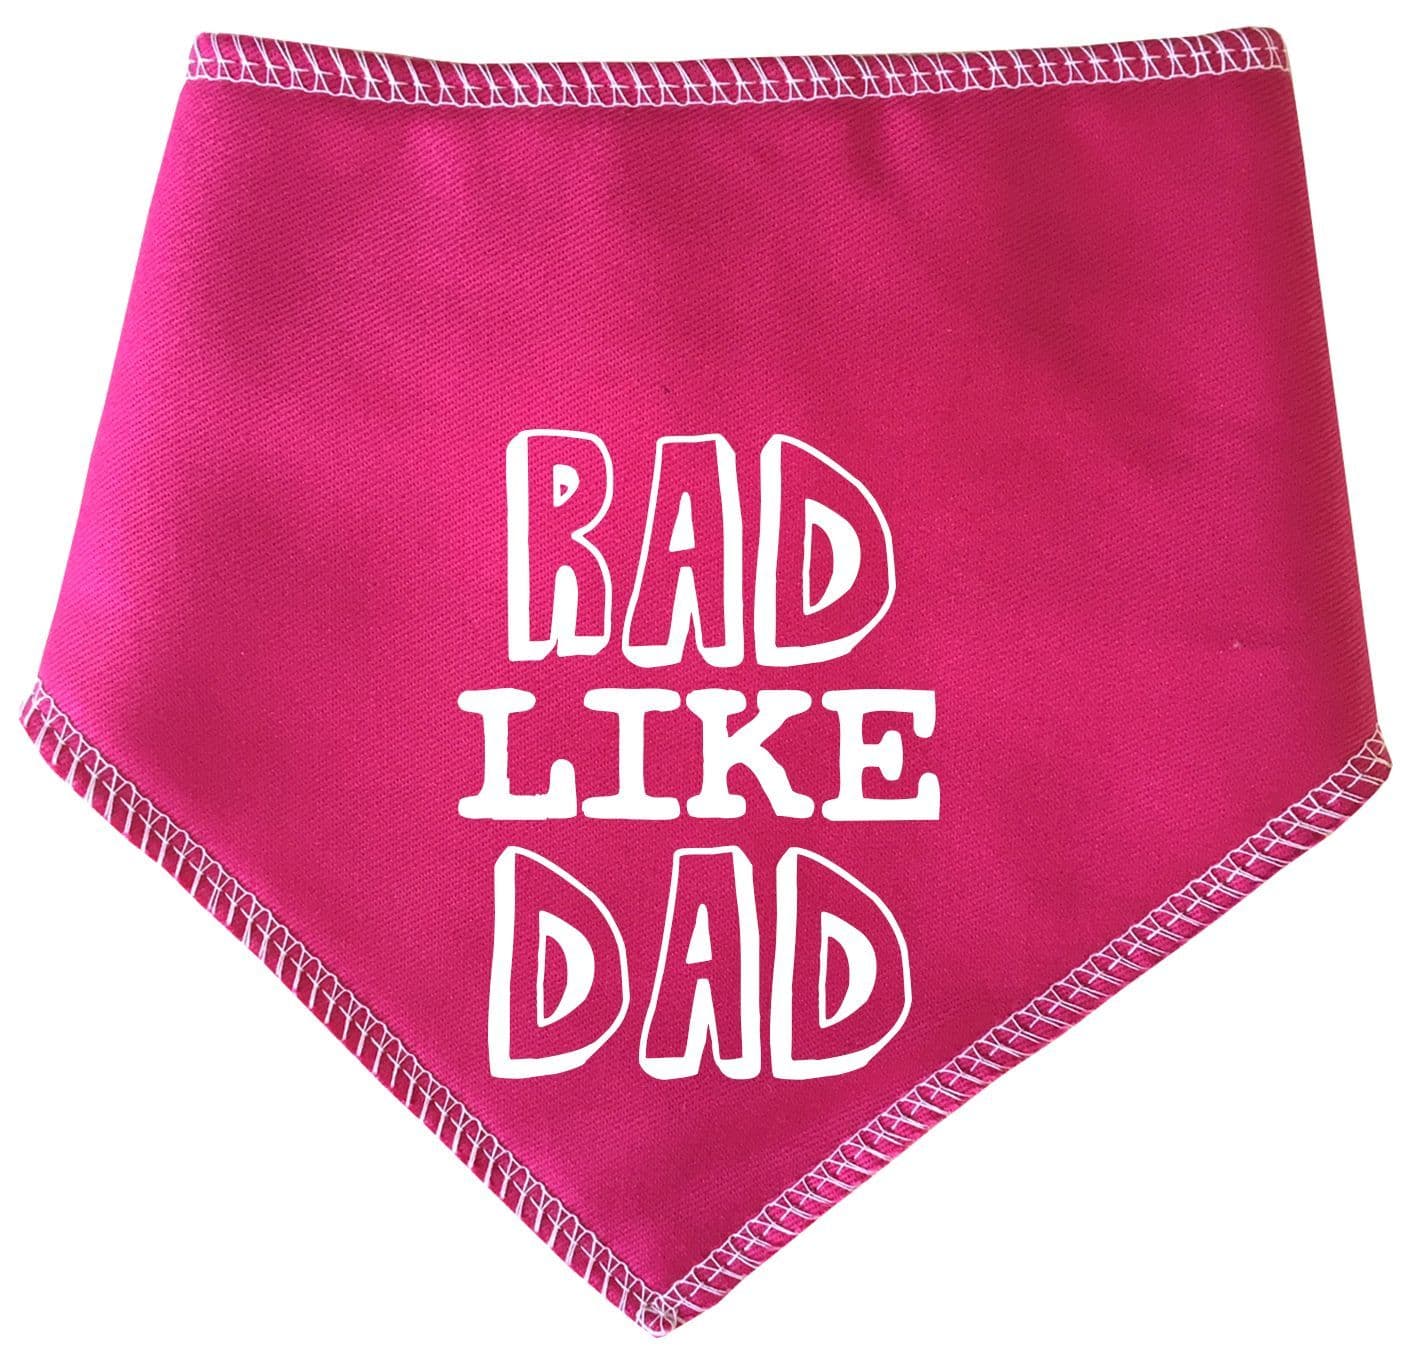 'Rad Like Dad' Dog Bandana